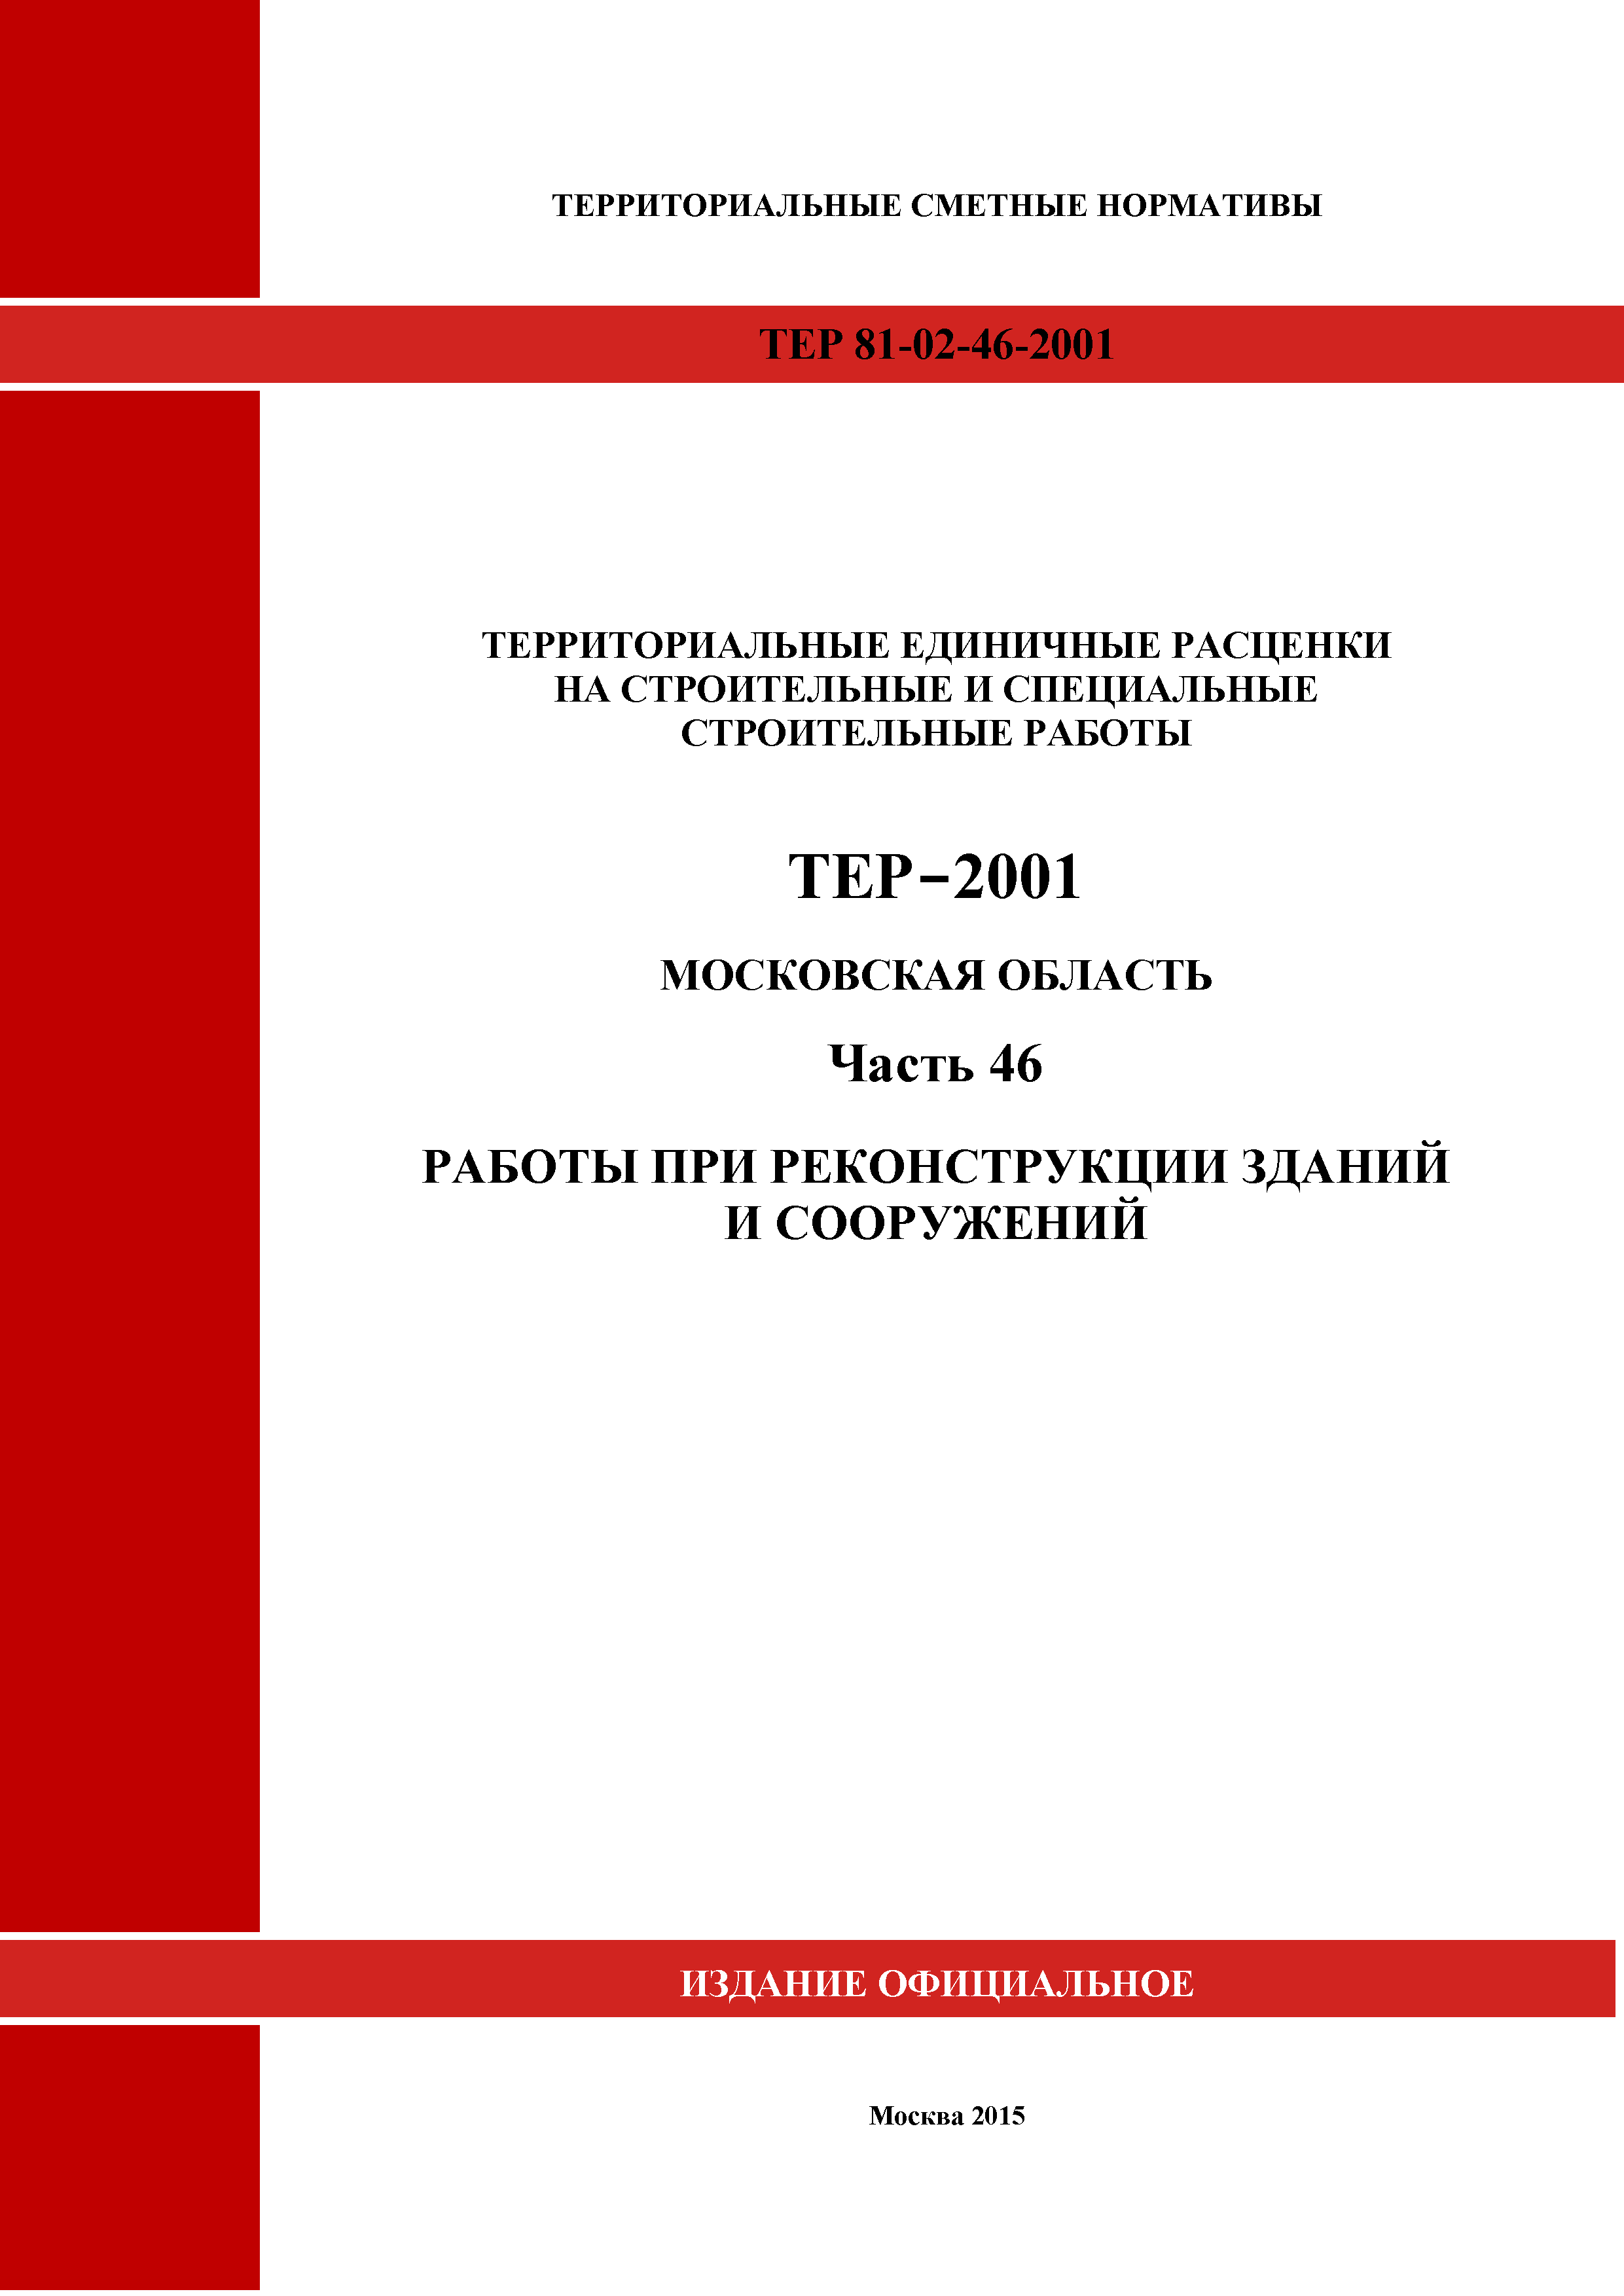 ТЕР 46-2001 Московской области